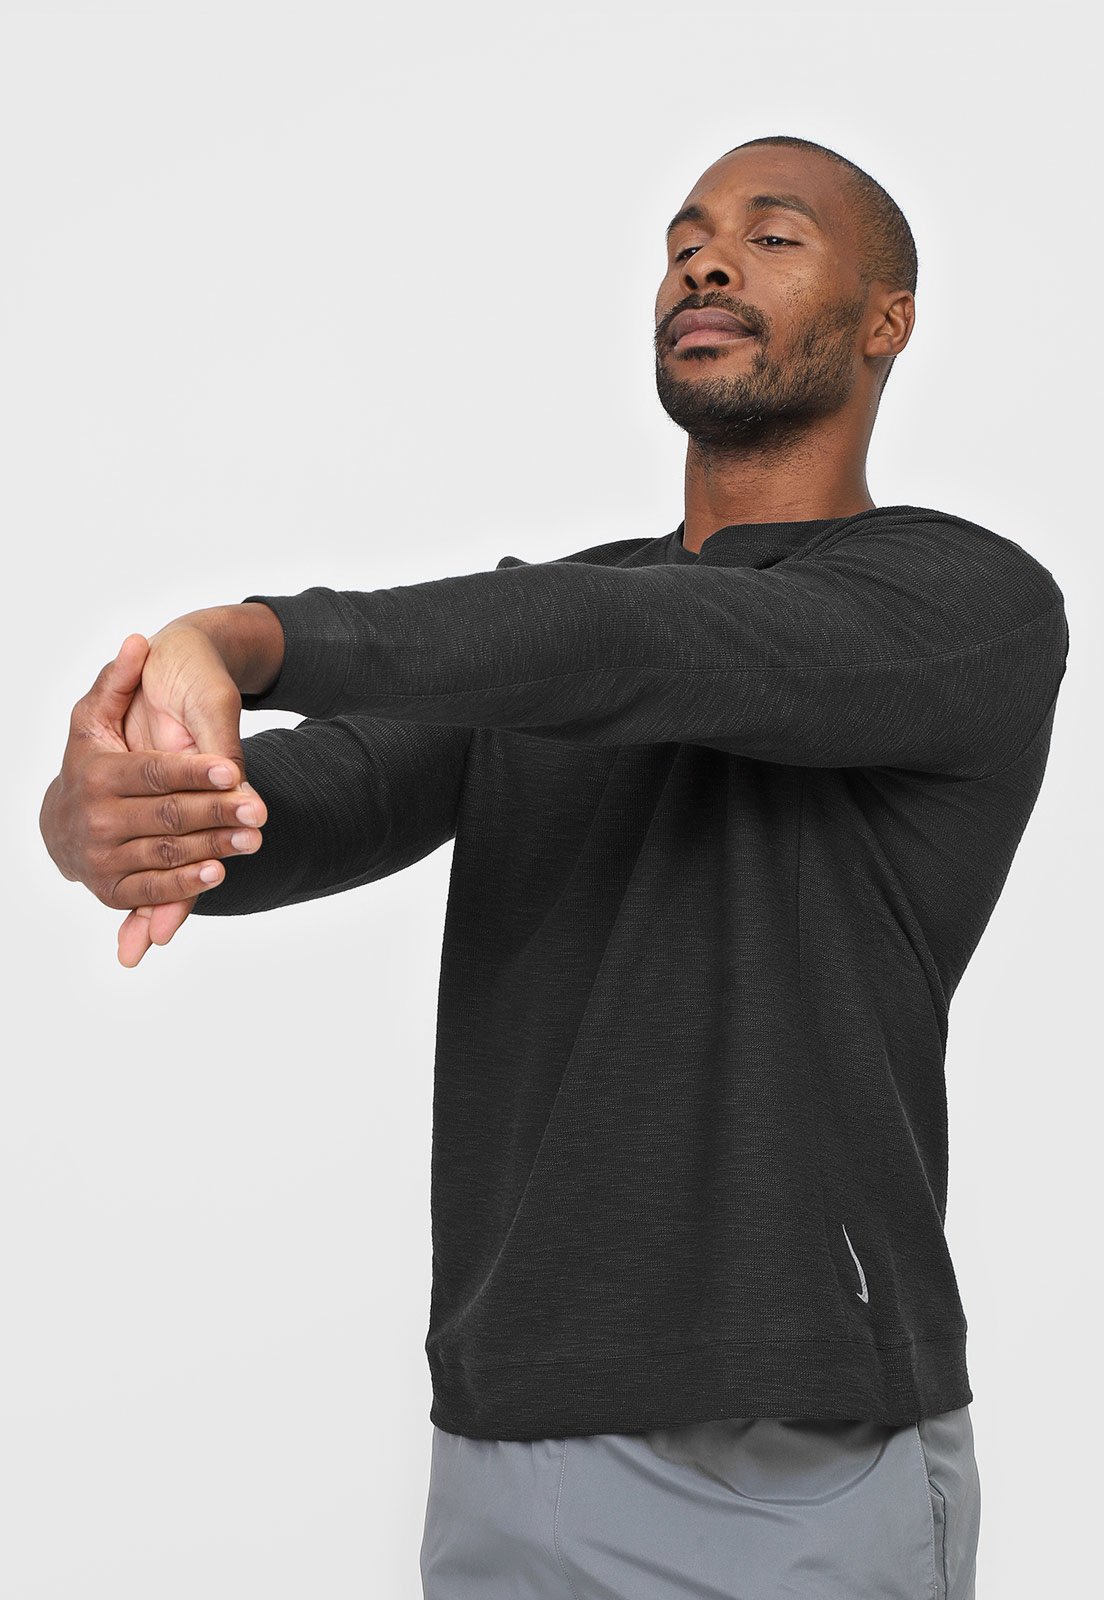 Camiseta Nike Dry Flc Core Yoga Preta - Compre Agora